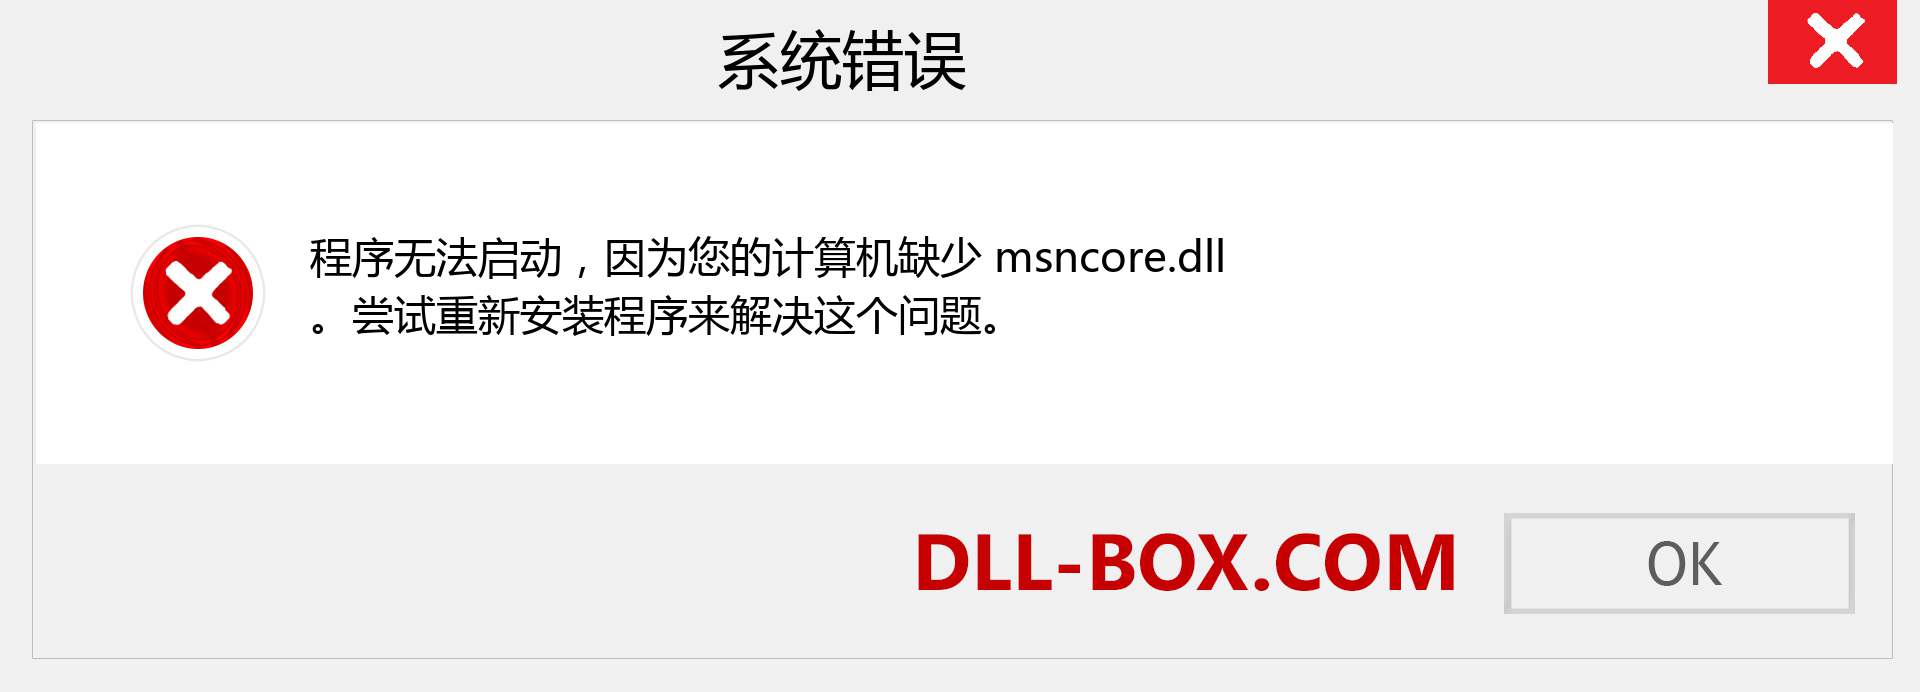 msncore.dll 文件丢失？。 适用于 Windows 7、8、10 的下载 - 修复 Windows、照片、图像上的 msncore dll 丢失错误